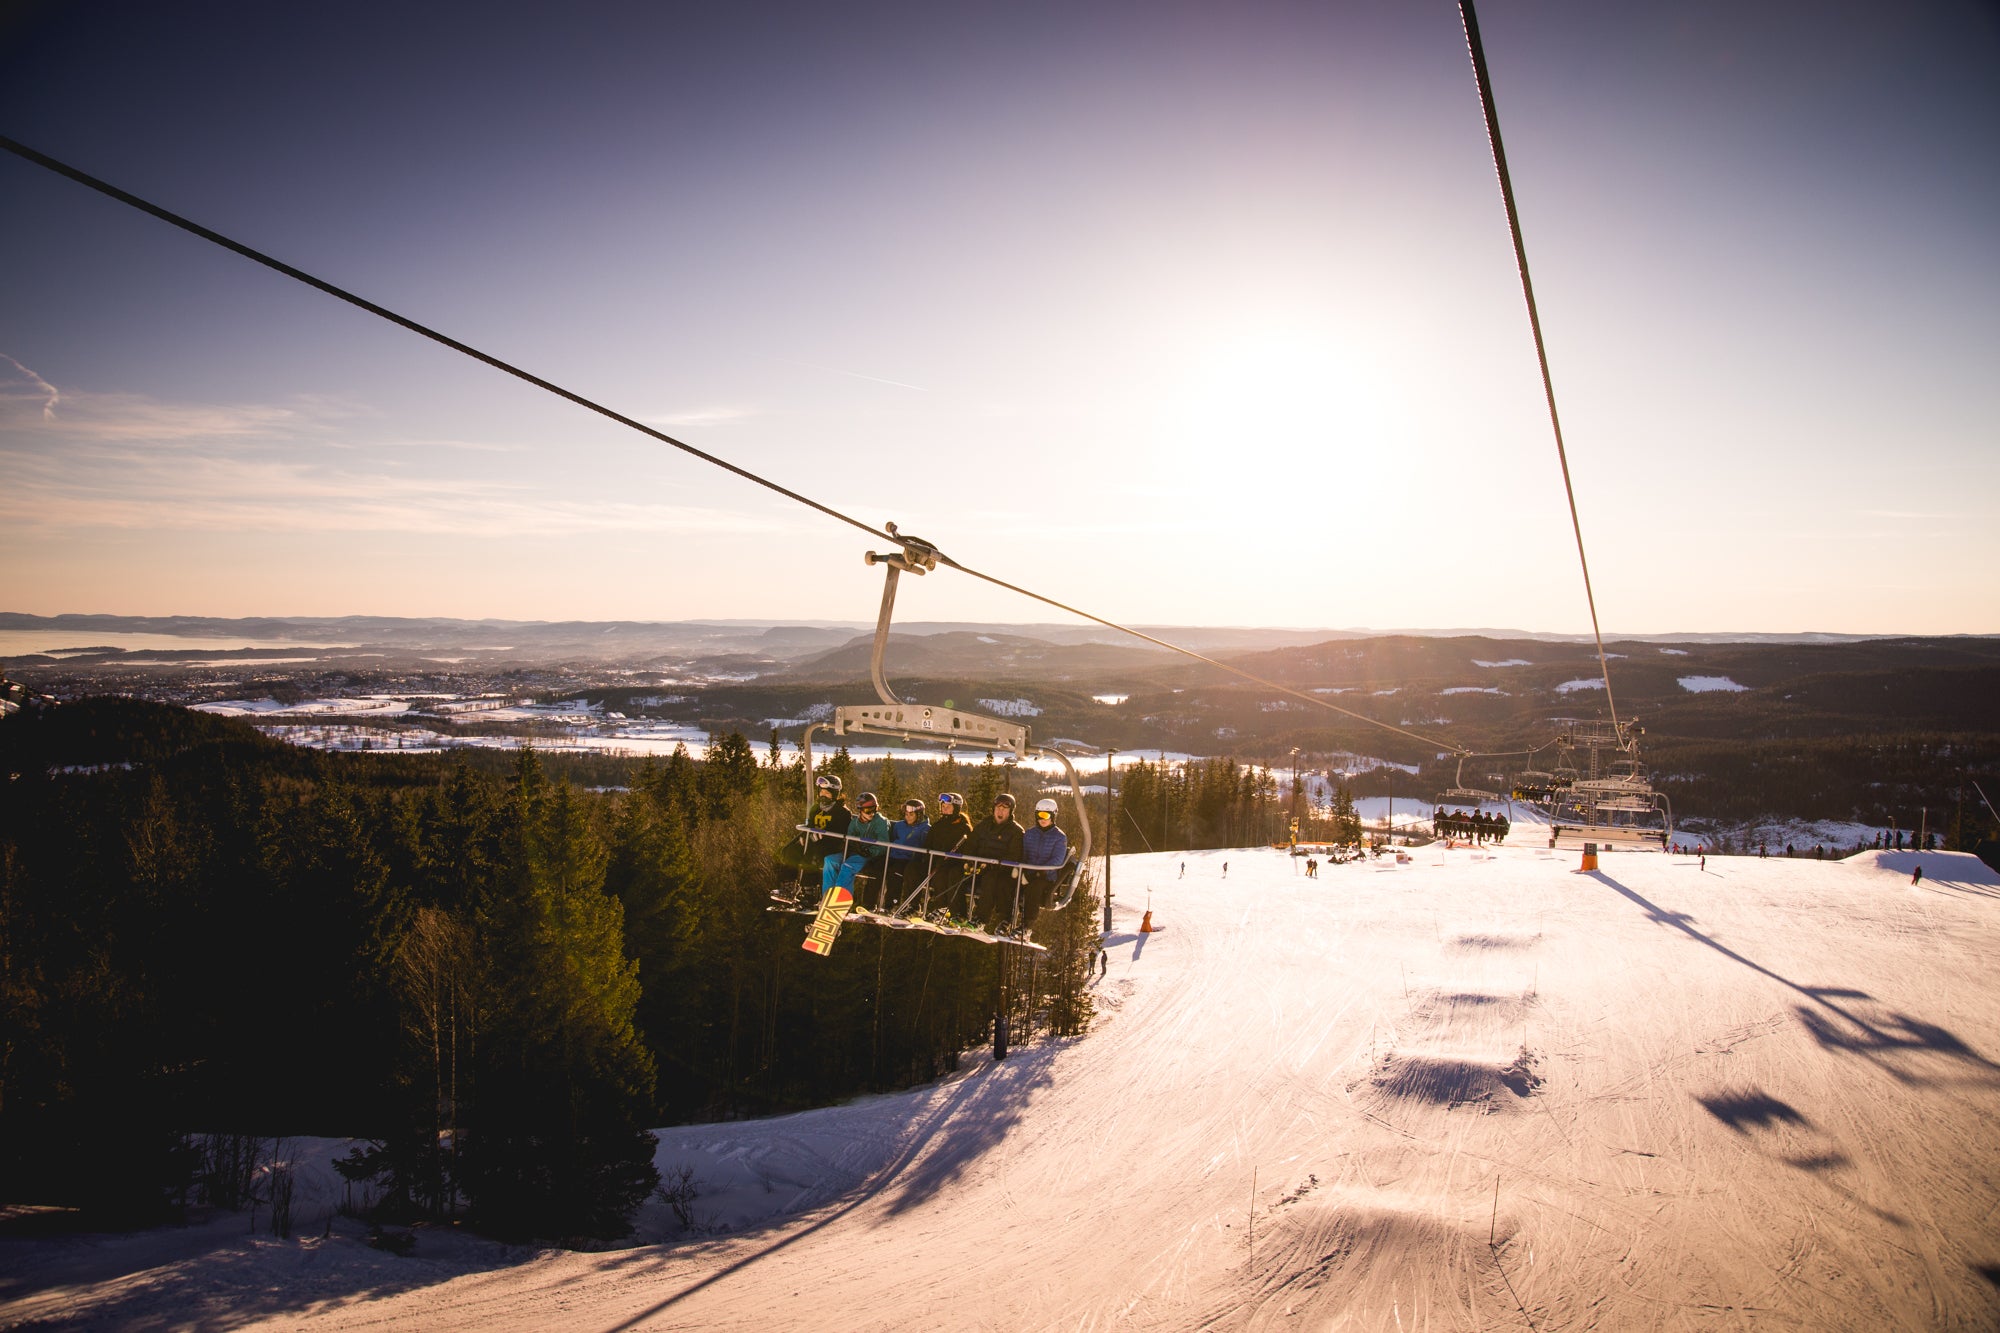 Oslo visitors can access a ski resort via the Metro